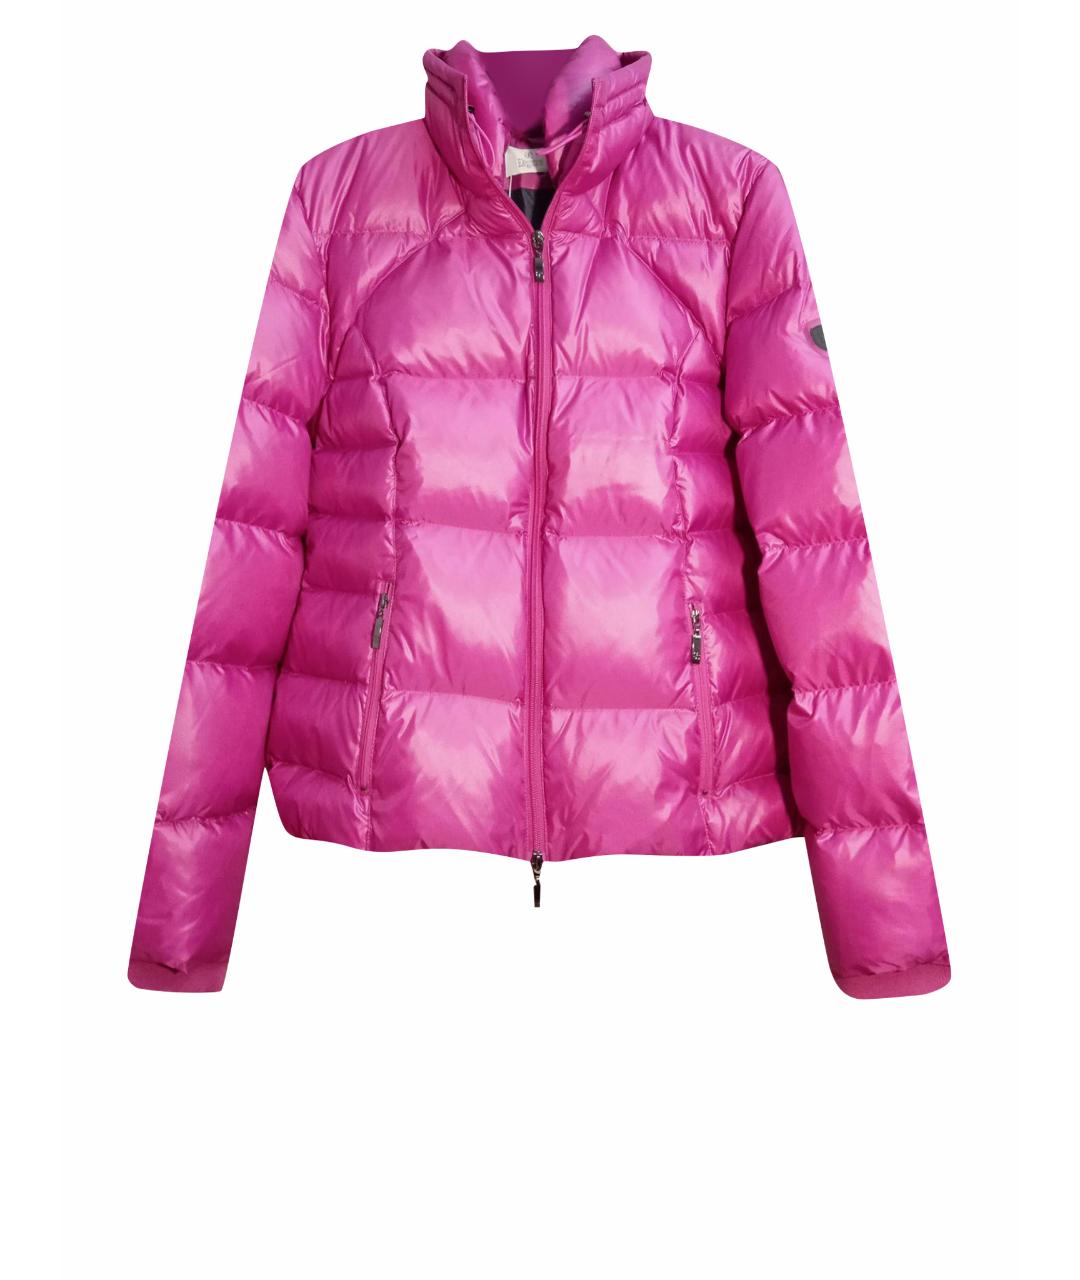 ELEGANCE Розовая полиамидовая куртка, фото 1